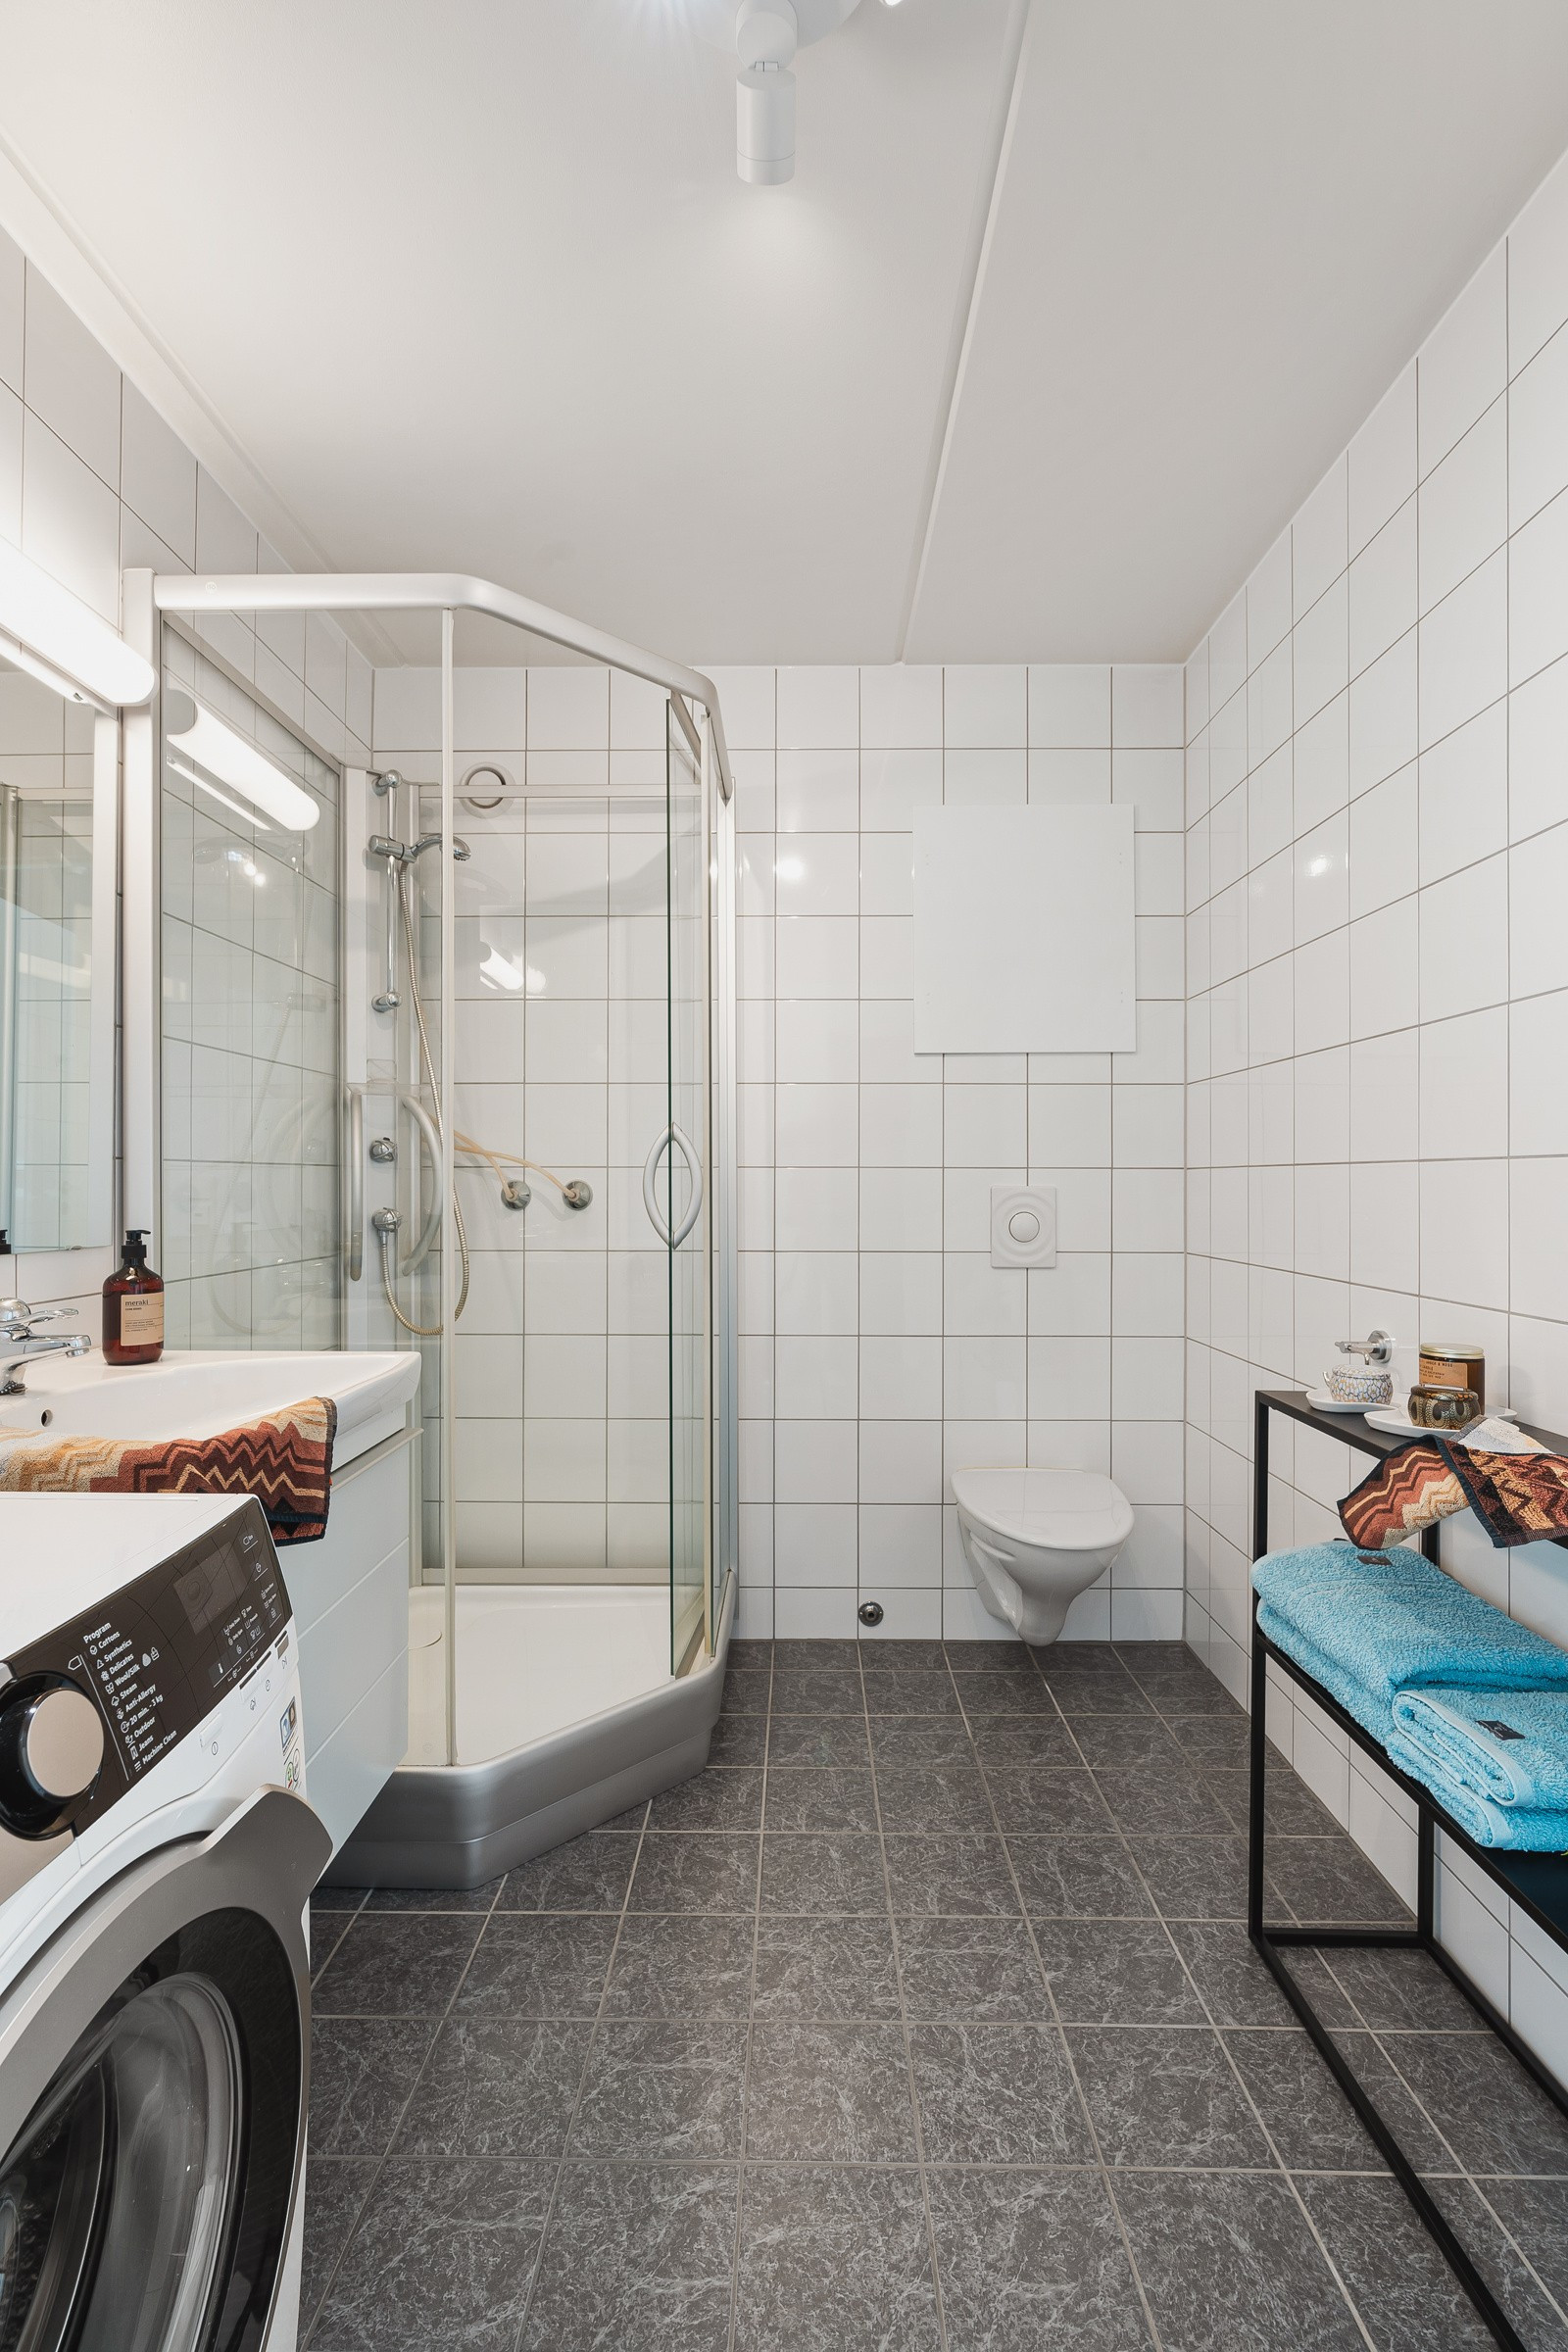 Det flislagte badet er utstyrt med praktisk vegghengt toalett, dusjkabinett og baderomsinnredning med oppbevaringsplass.